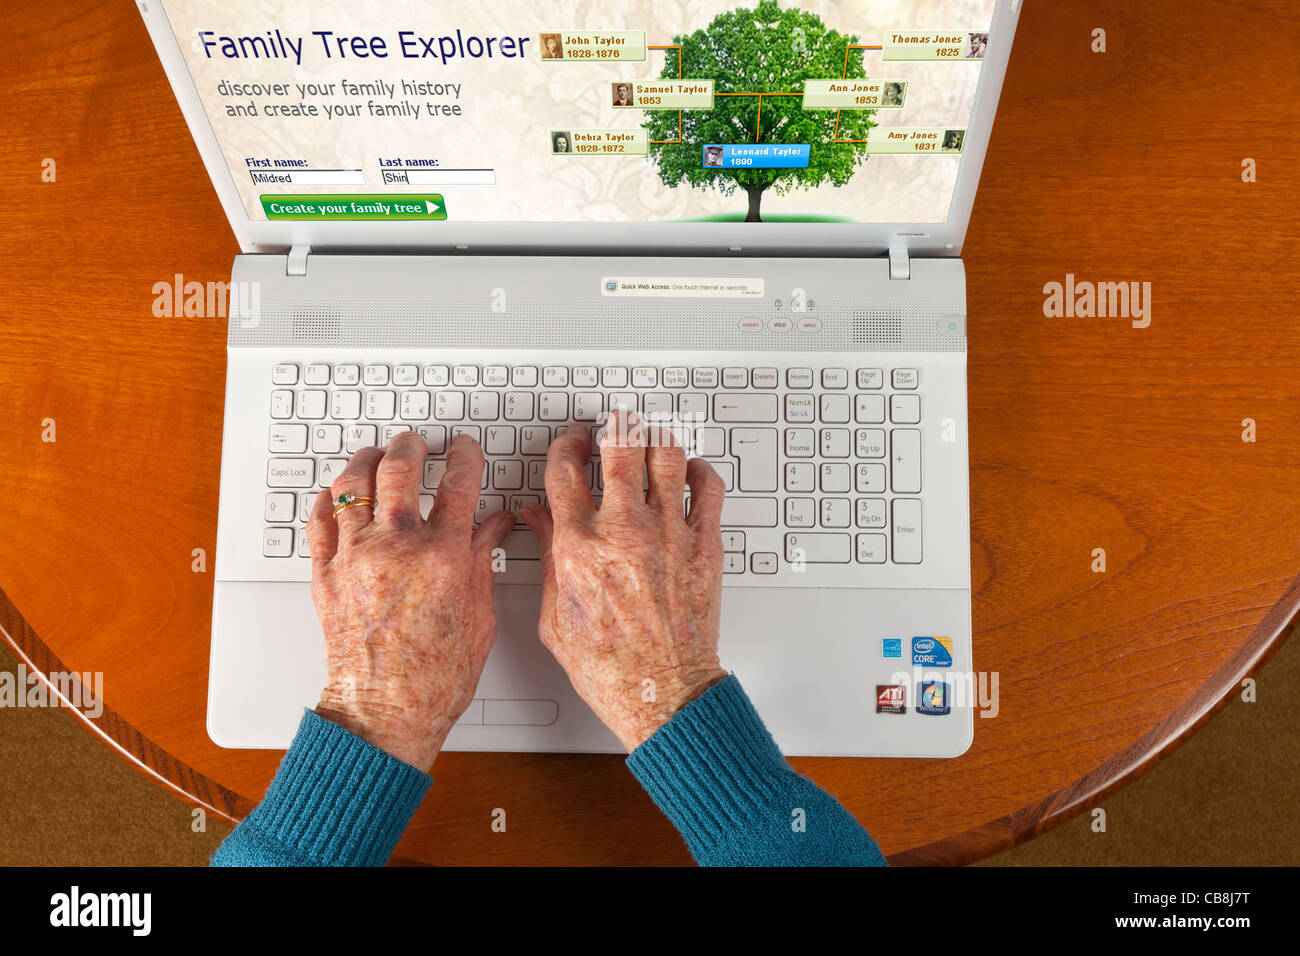 Les personnes âgées de sexe féminin la main à l'aide d'un ordinateur portable pour vérifier l'arbre de famille via internet Banque D'Images